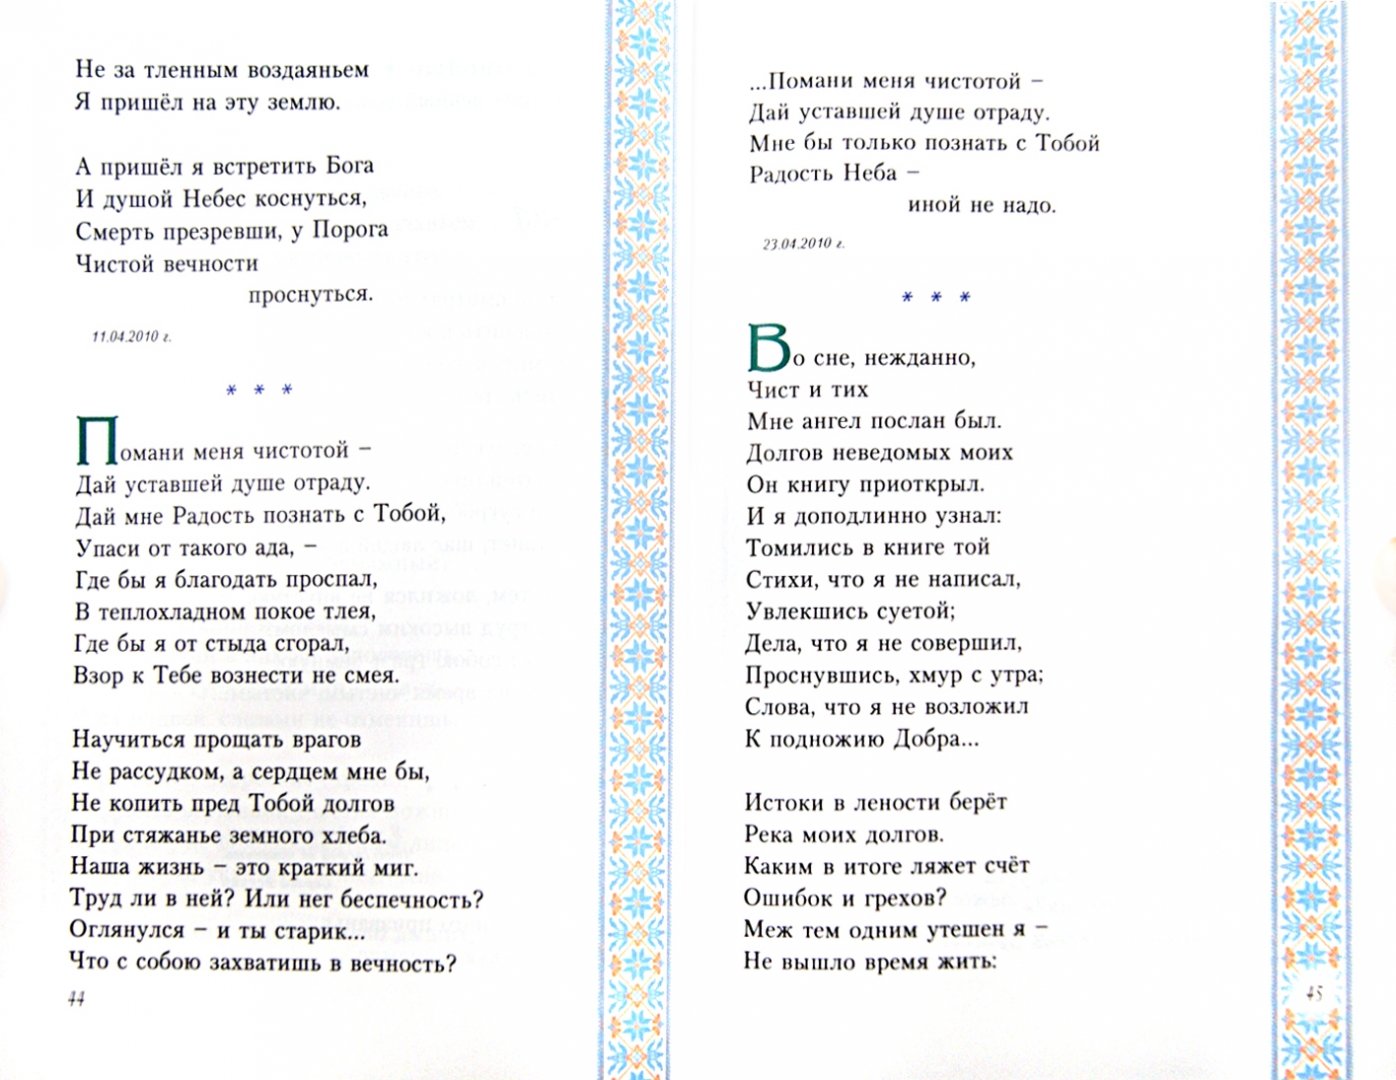 Иллюстрация 1 из 3 для Великое русское слово. Избранные стихотворения - Алексий Протоиерей | Лабиринт - книги. Источник: Лабиринт